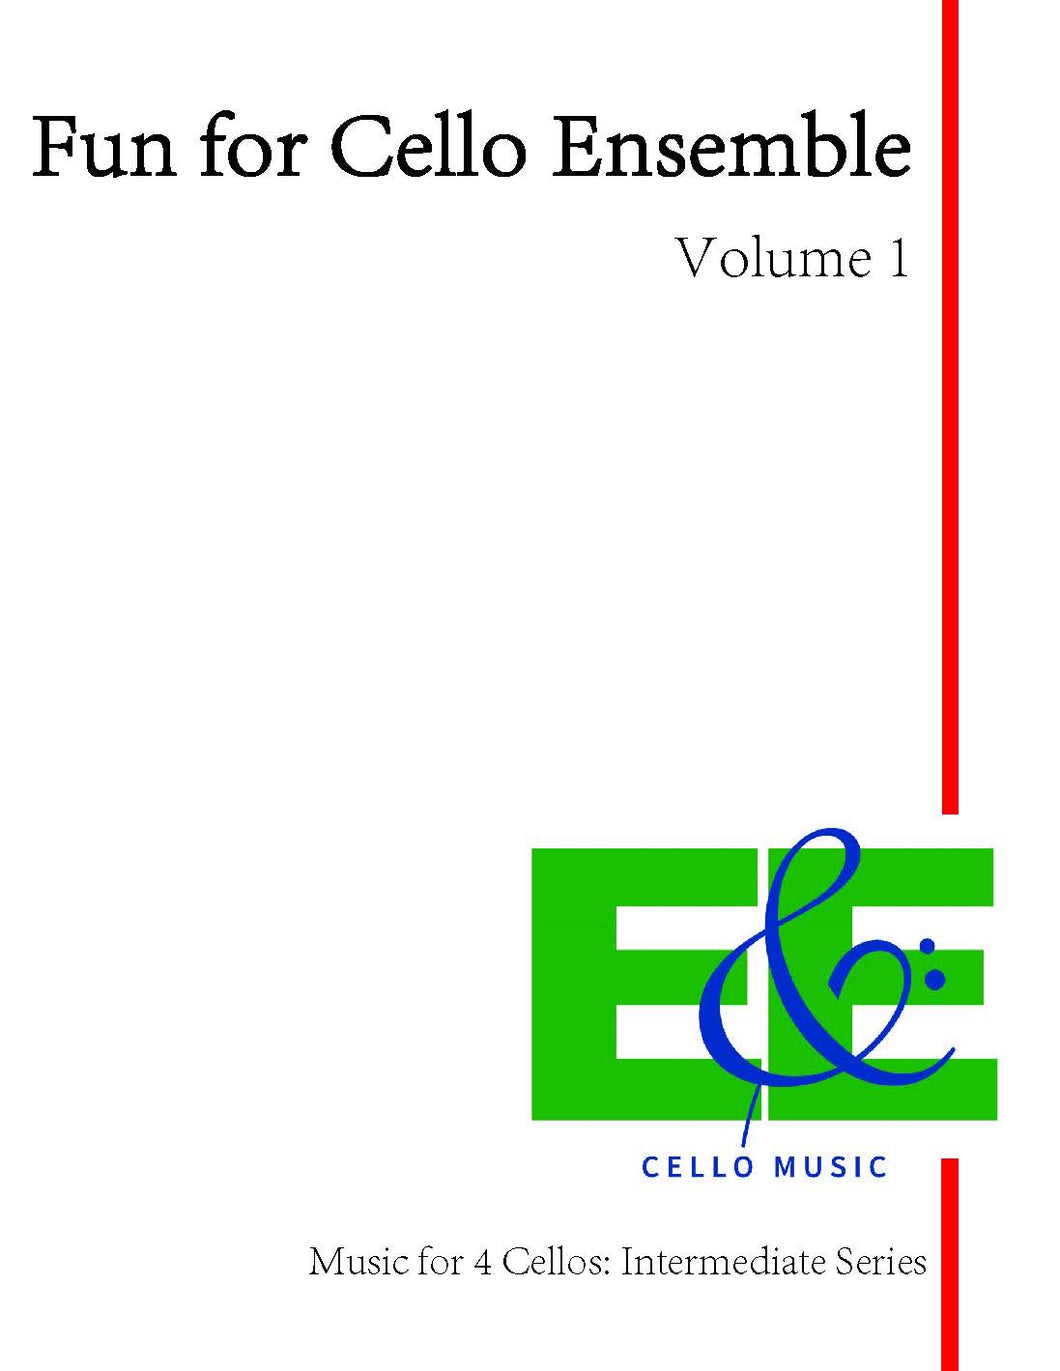 Fun for Cello Ensemble Vol. 1<br>Music for 4 Cellos:<br>Intermediate Series